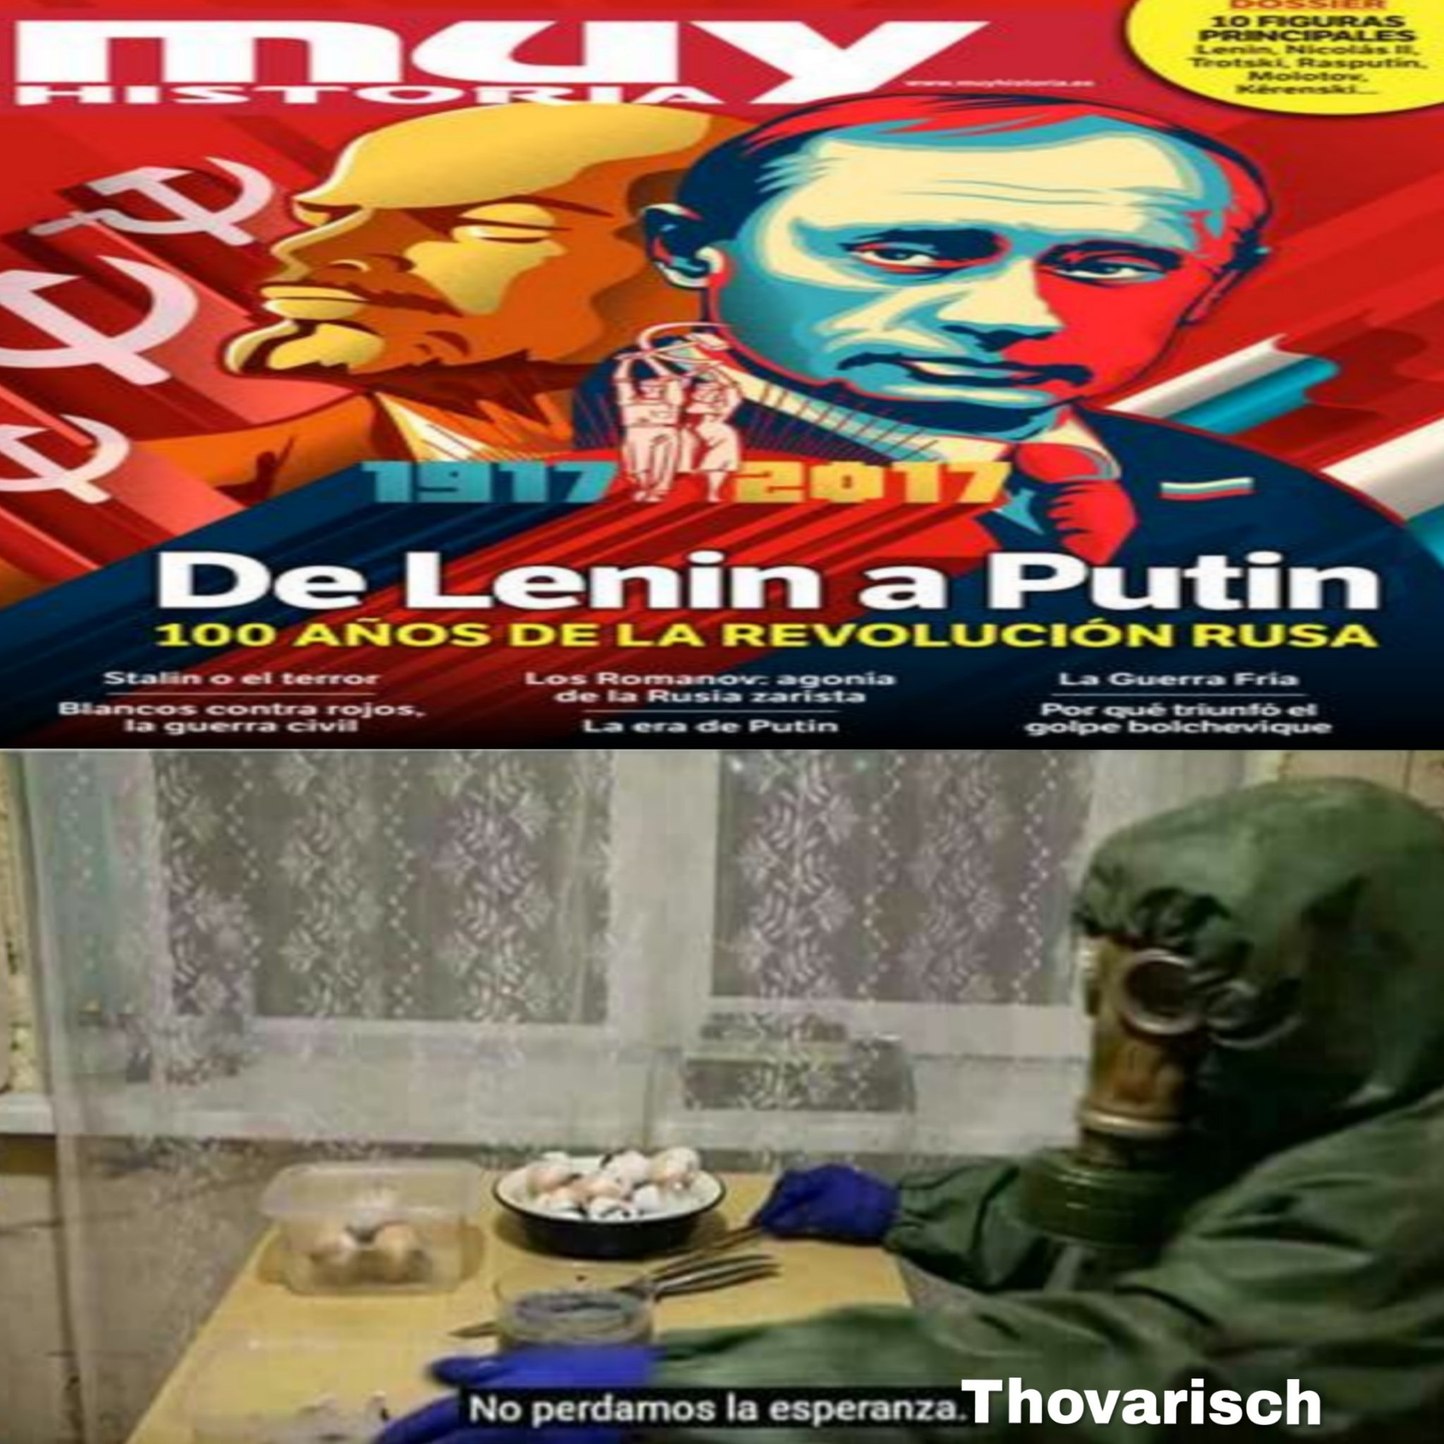 AAAAAY LA URSS - meme